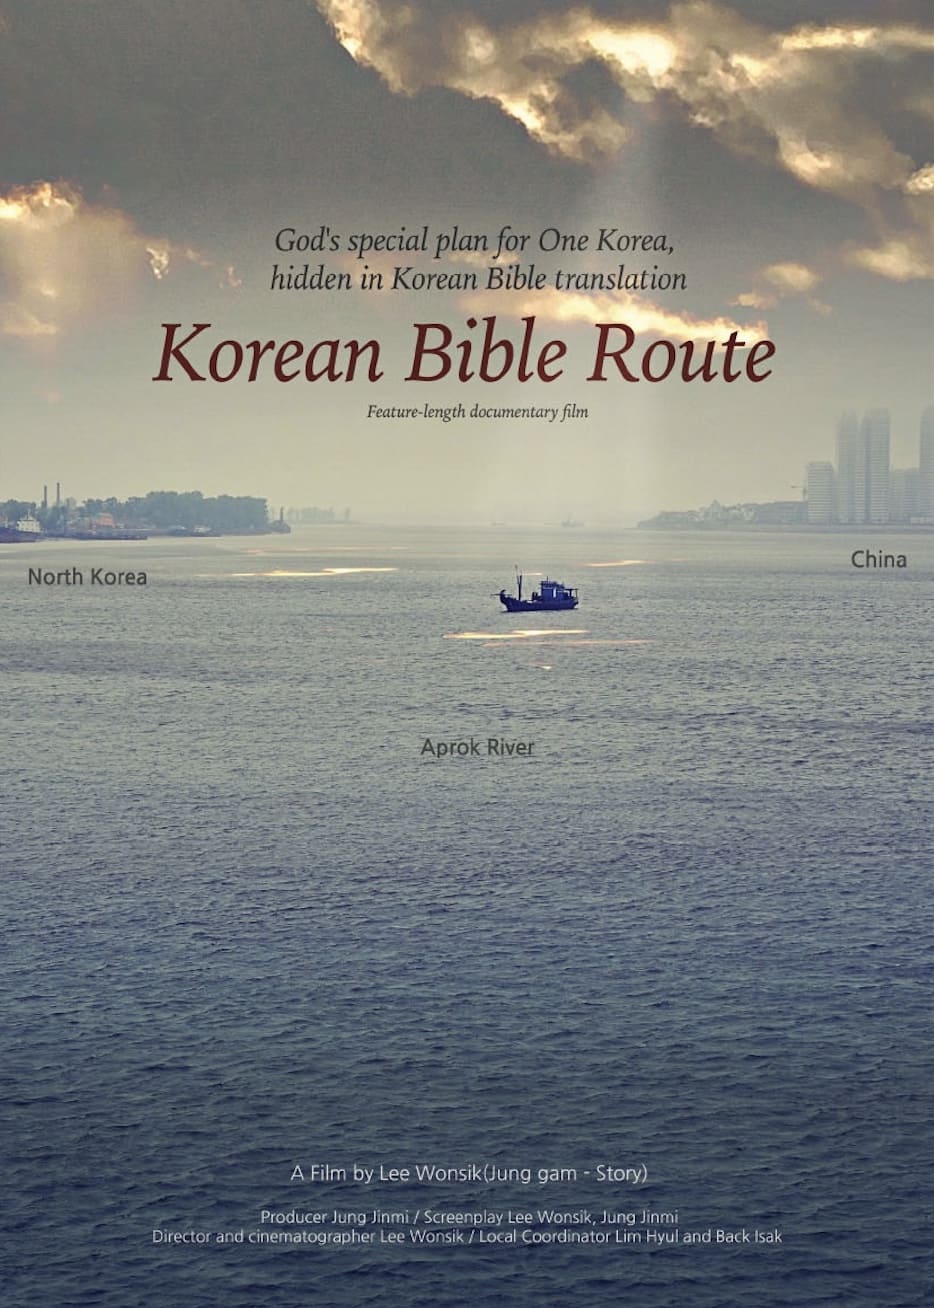 Korean Bible Route